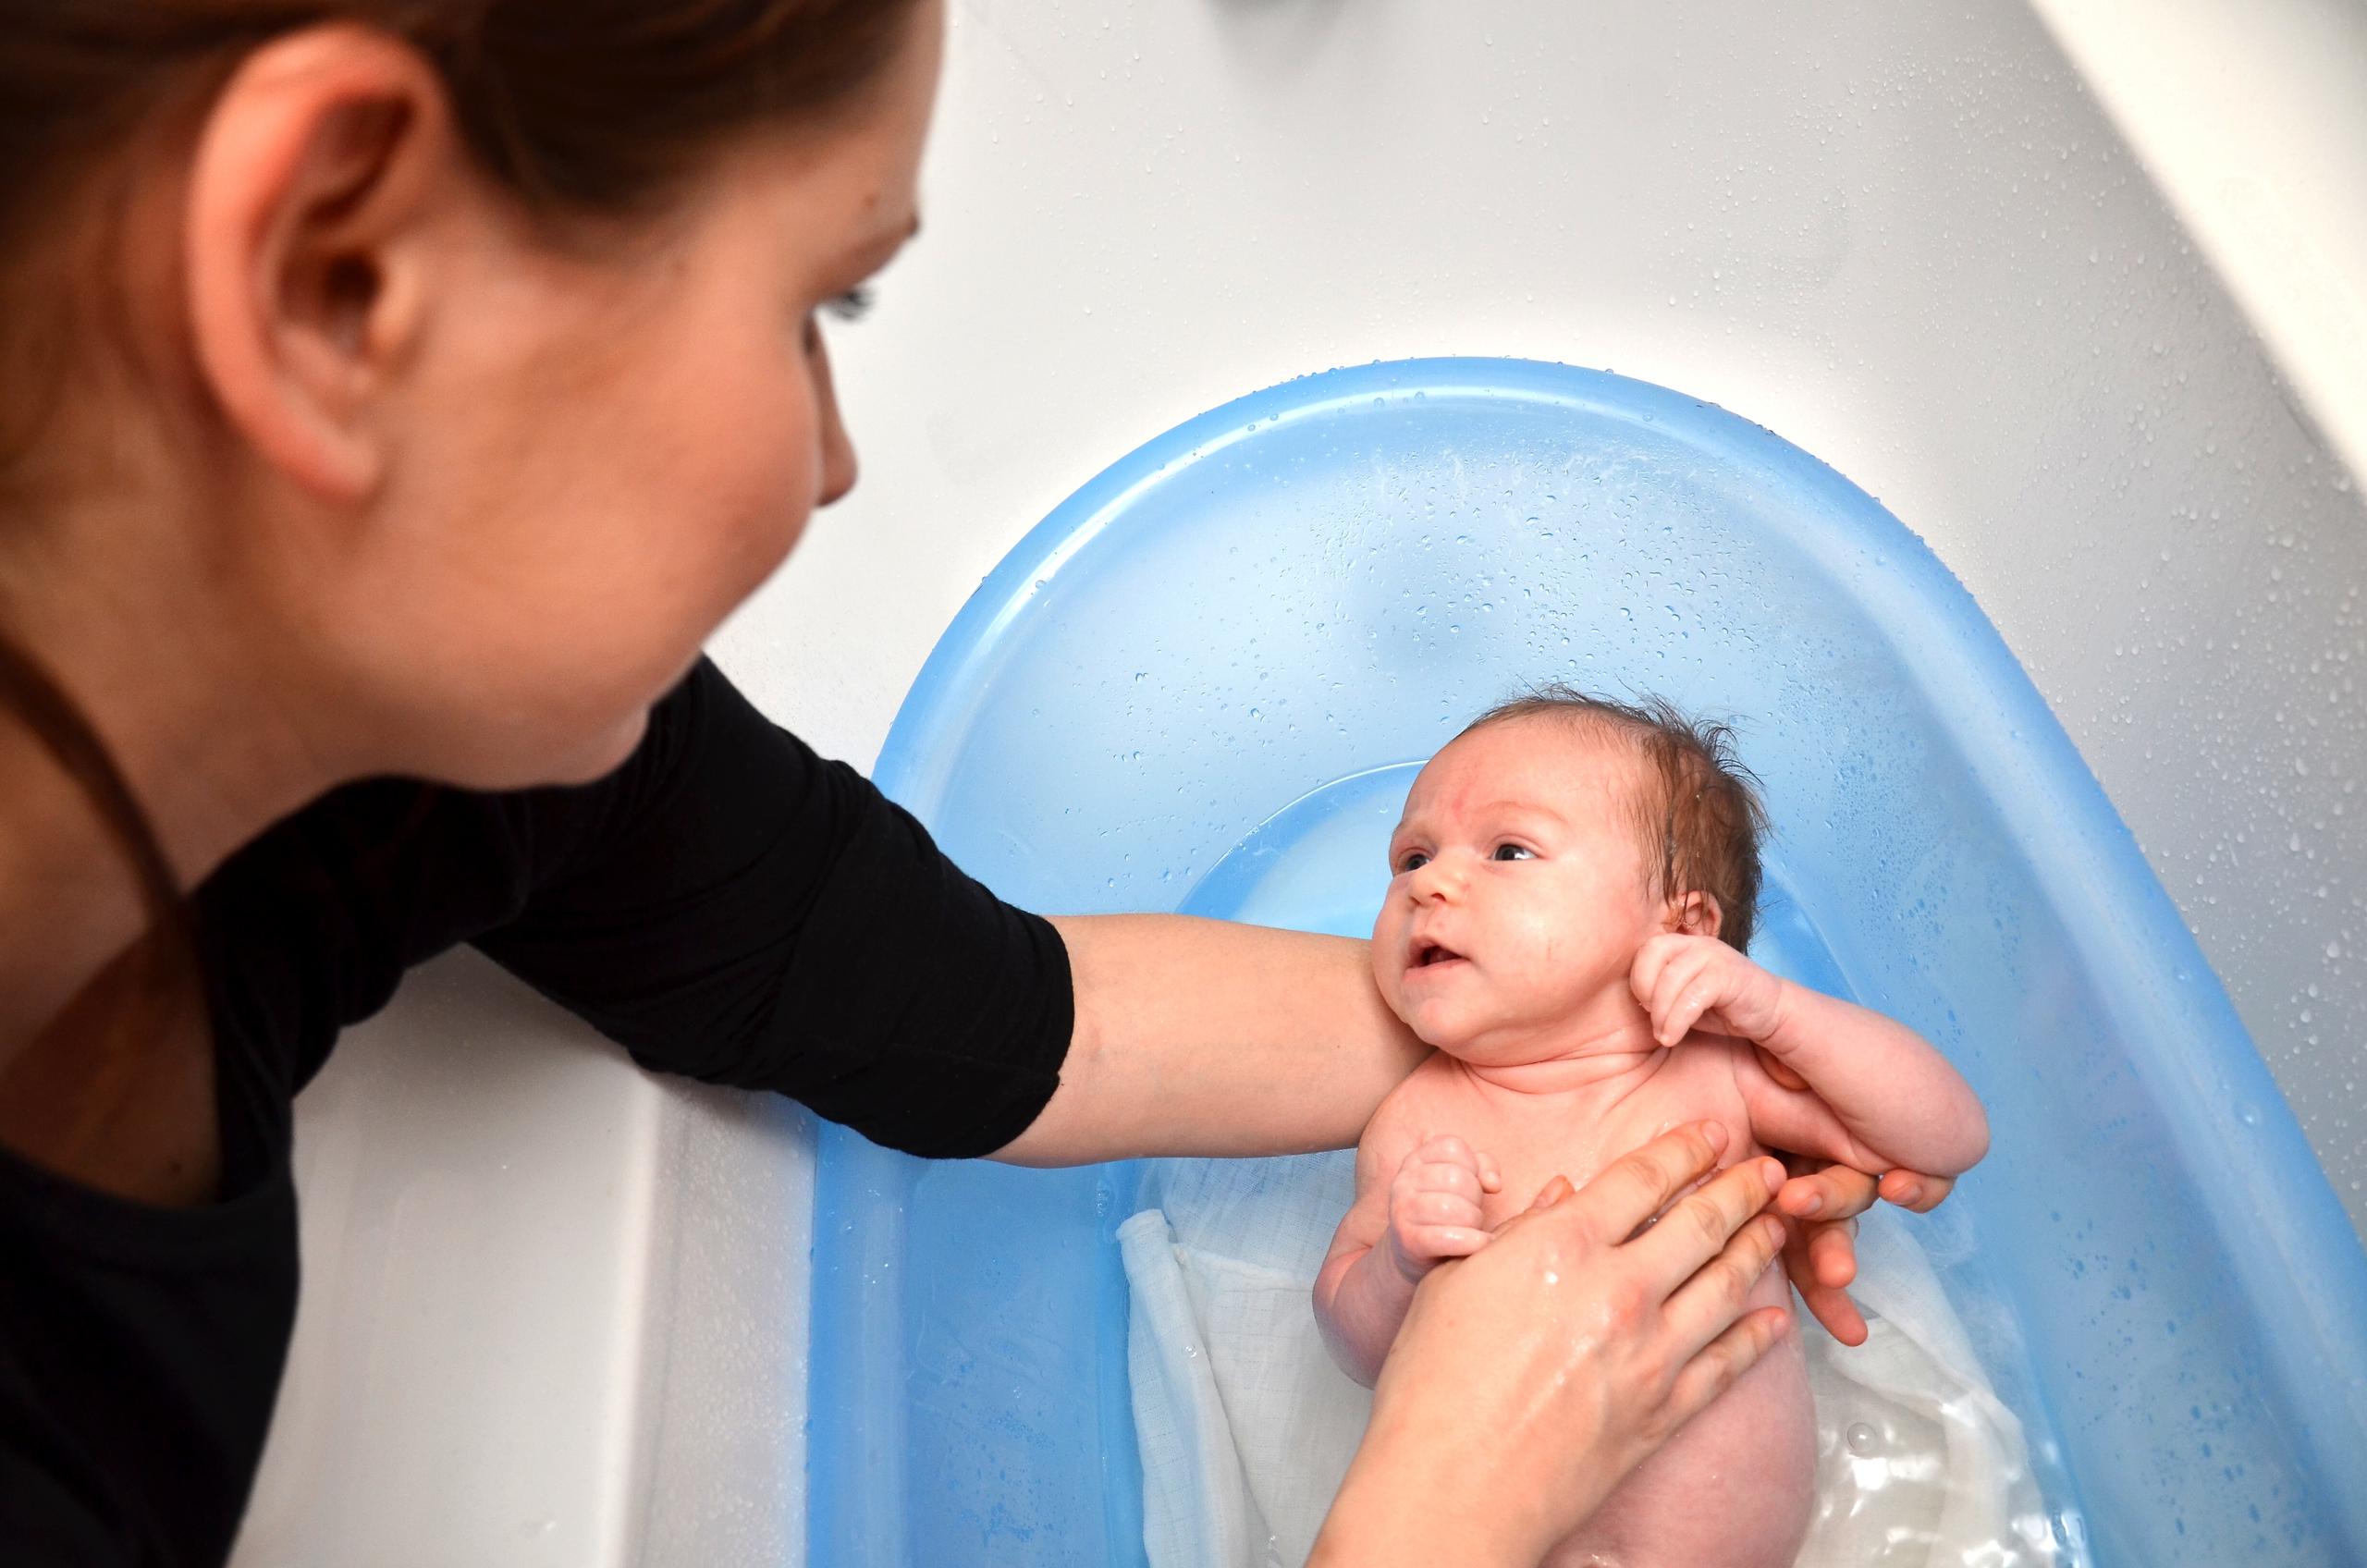 Nunca dejes solo a un bebé al momento del baño. Basta con unos segundos para que ocurra un suceso lamentable.